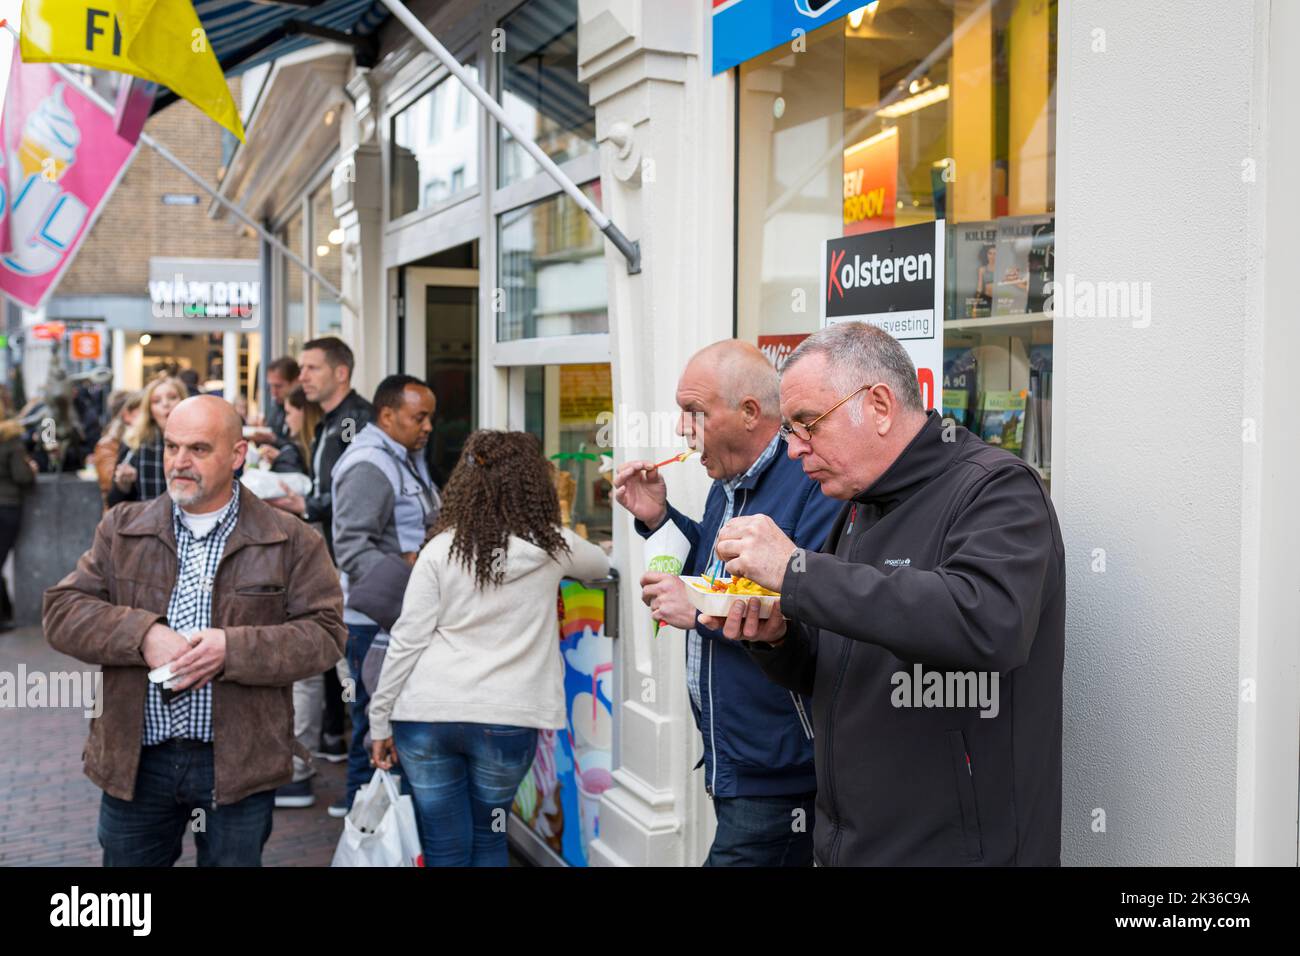 Gente comiendo papas fritas y aperitivos fritos en la calle comercial de los Países Bajos Foto de stock